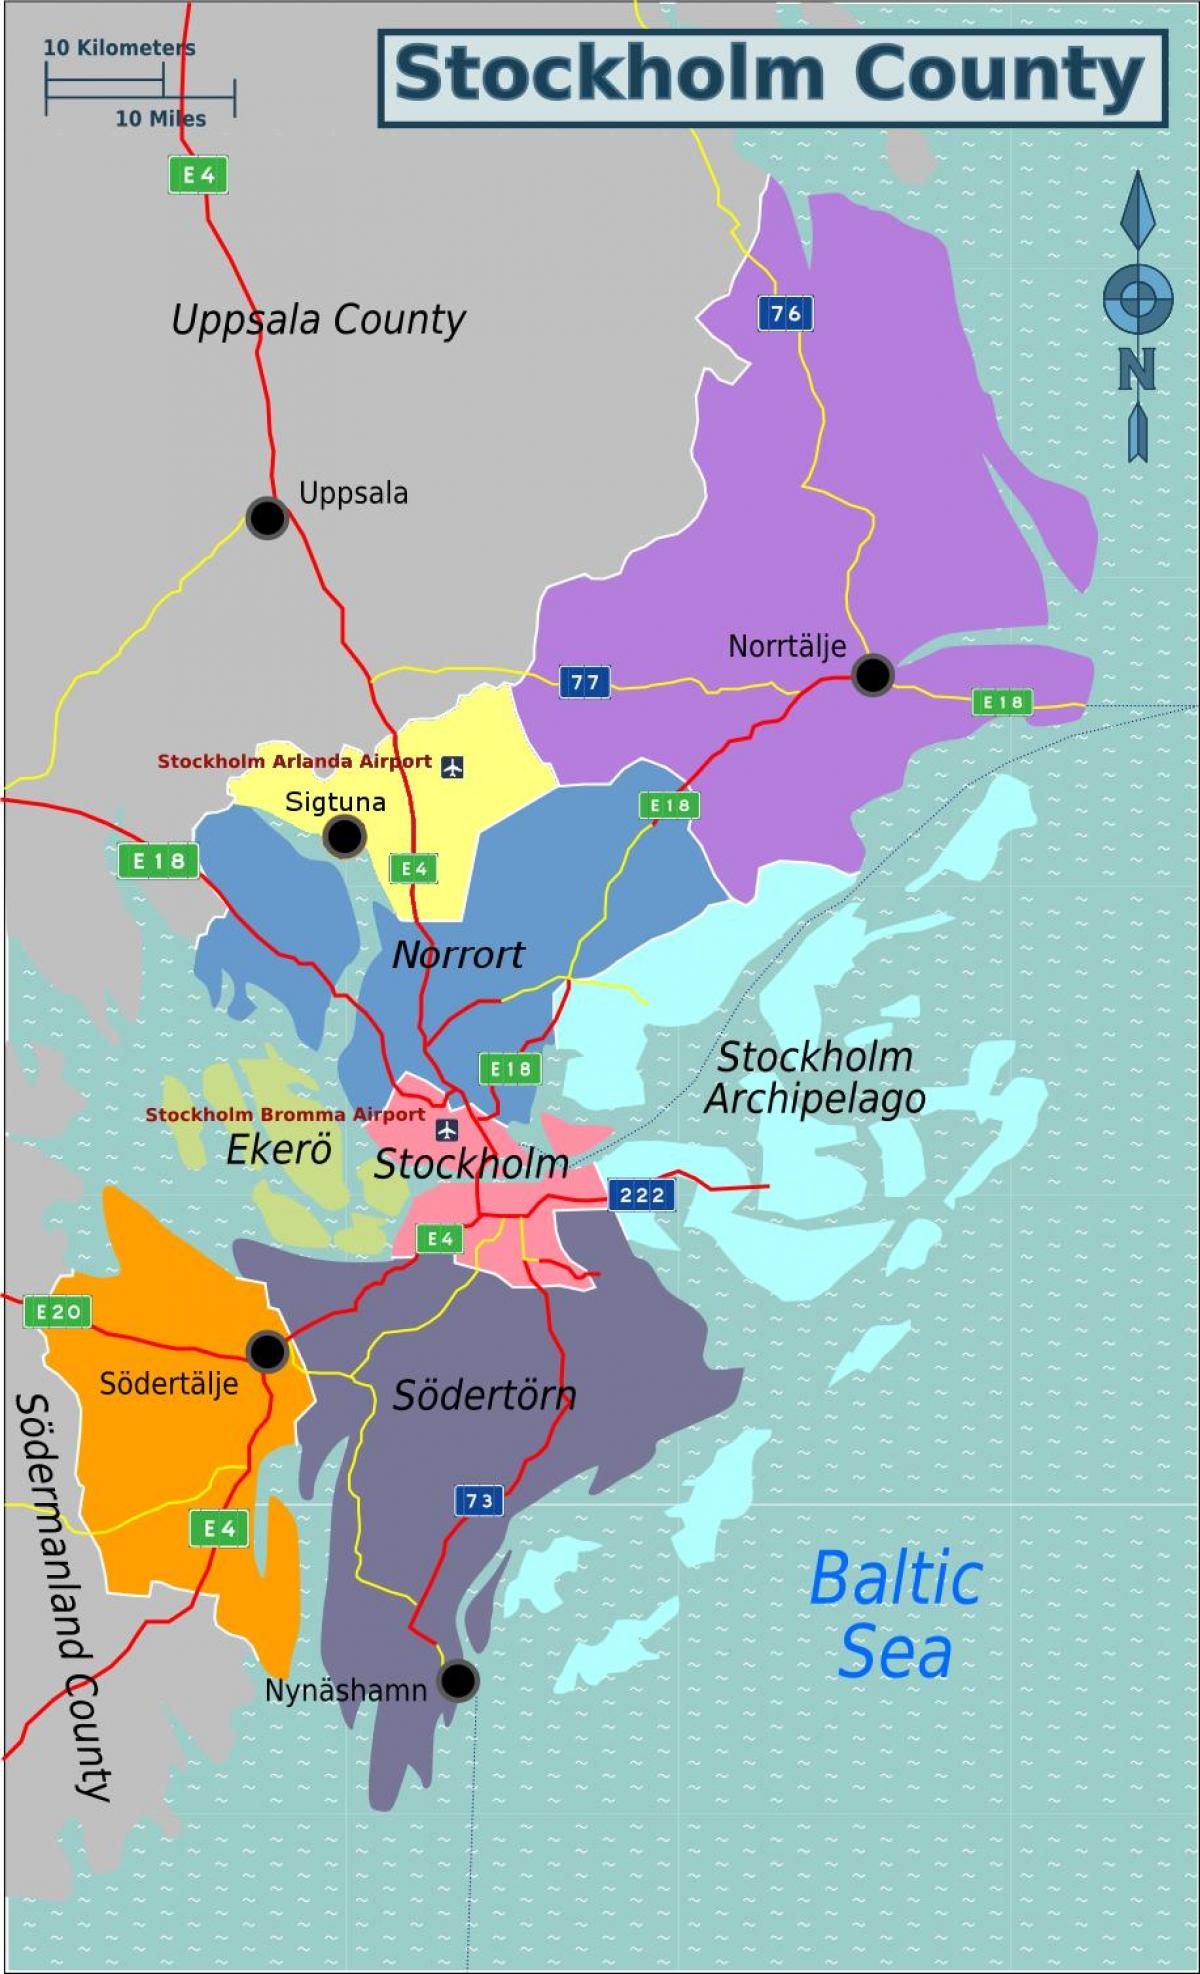 નકશો સ્ટોકહોમ સ્વીડન વિસ્તાર